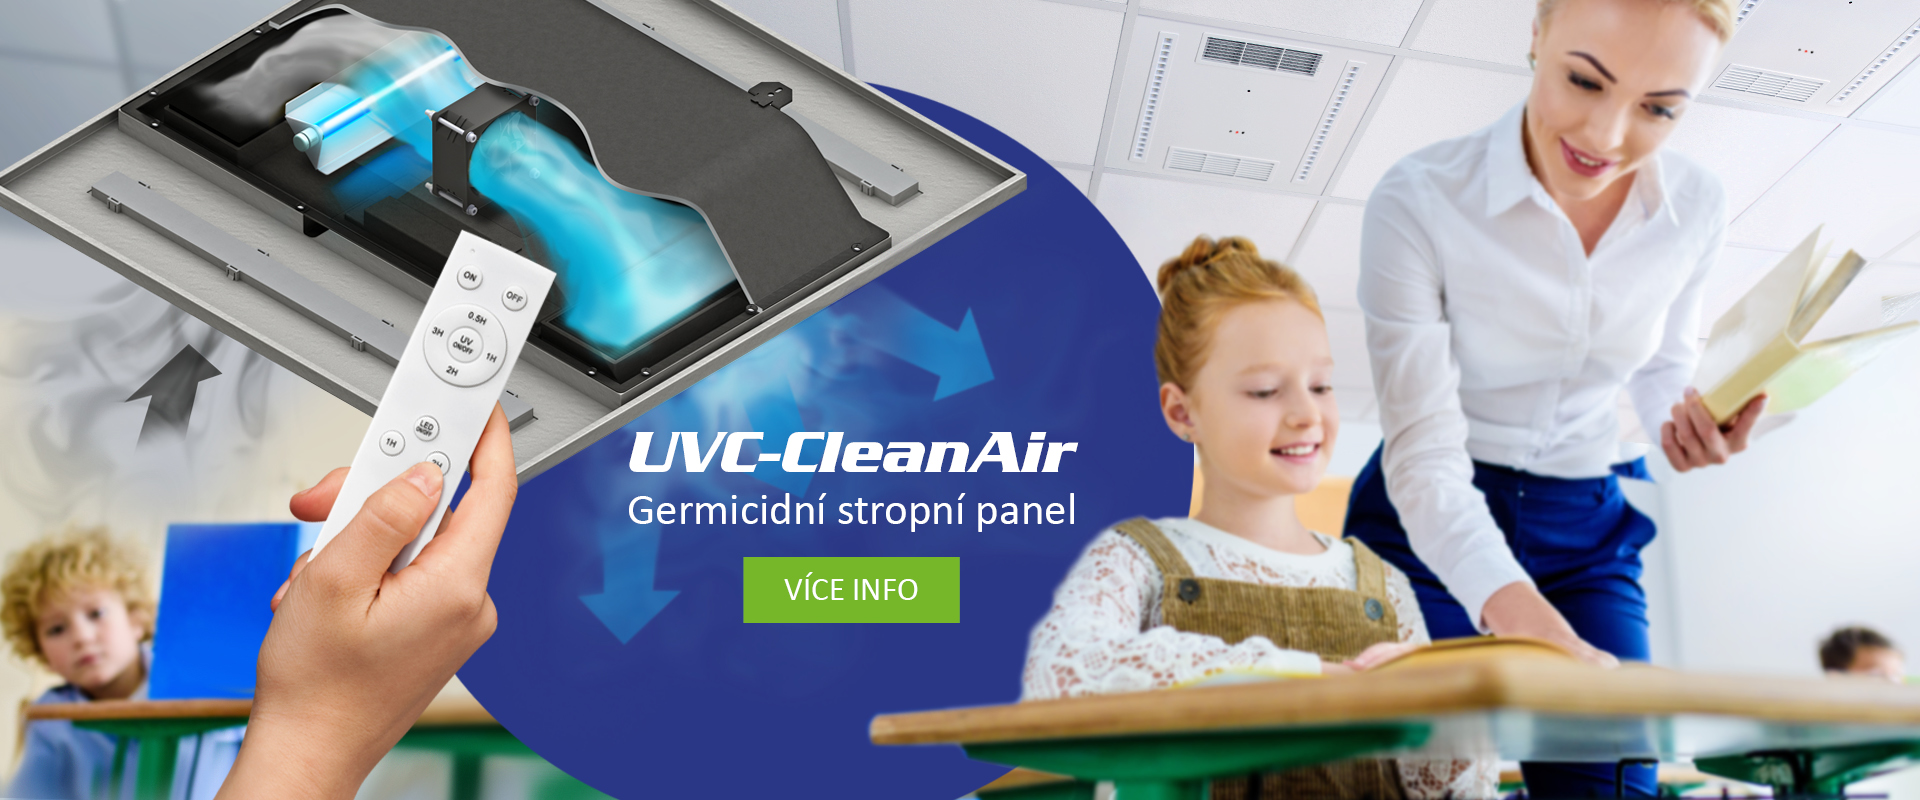 UVC-CleanAir; stropný germicídny čistič vzduchu